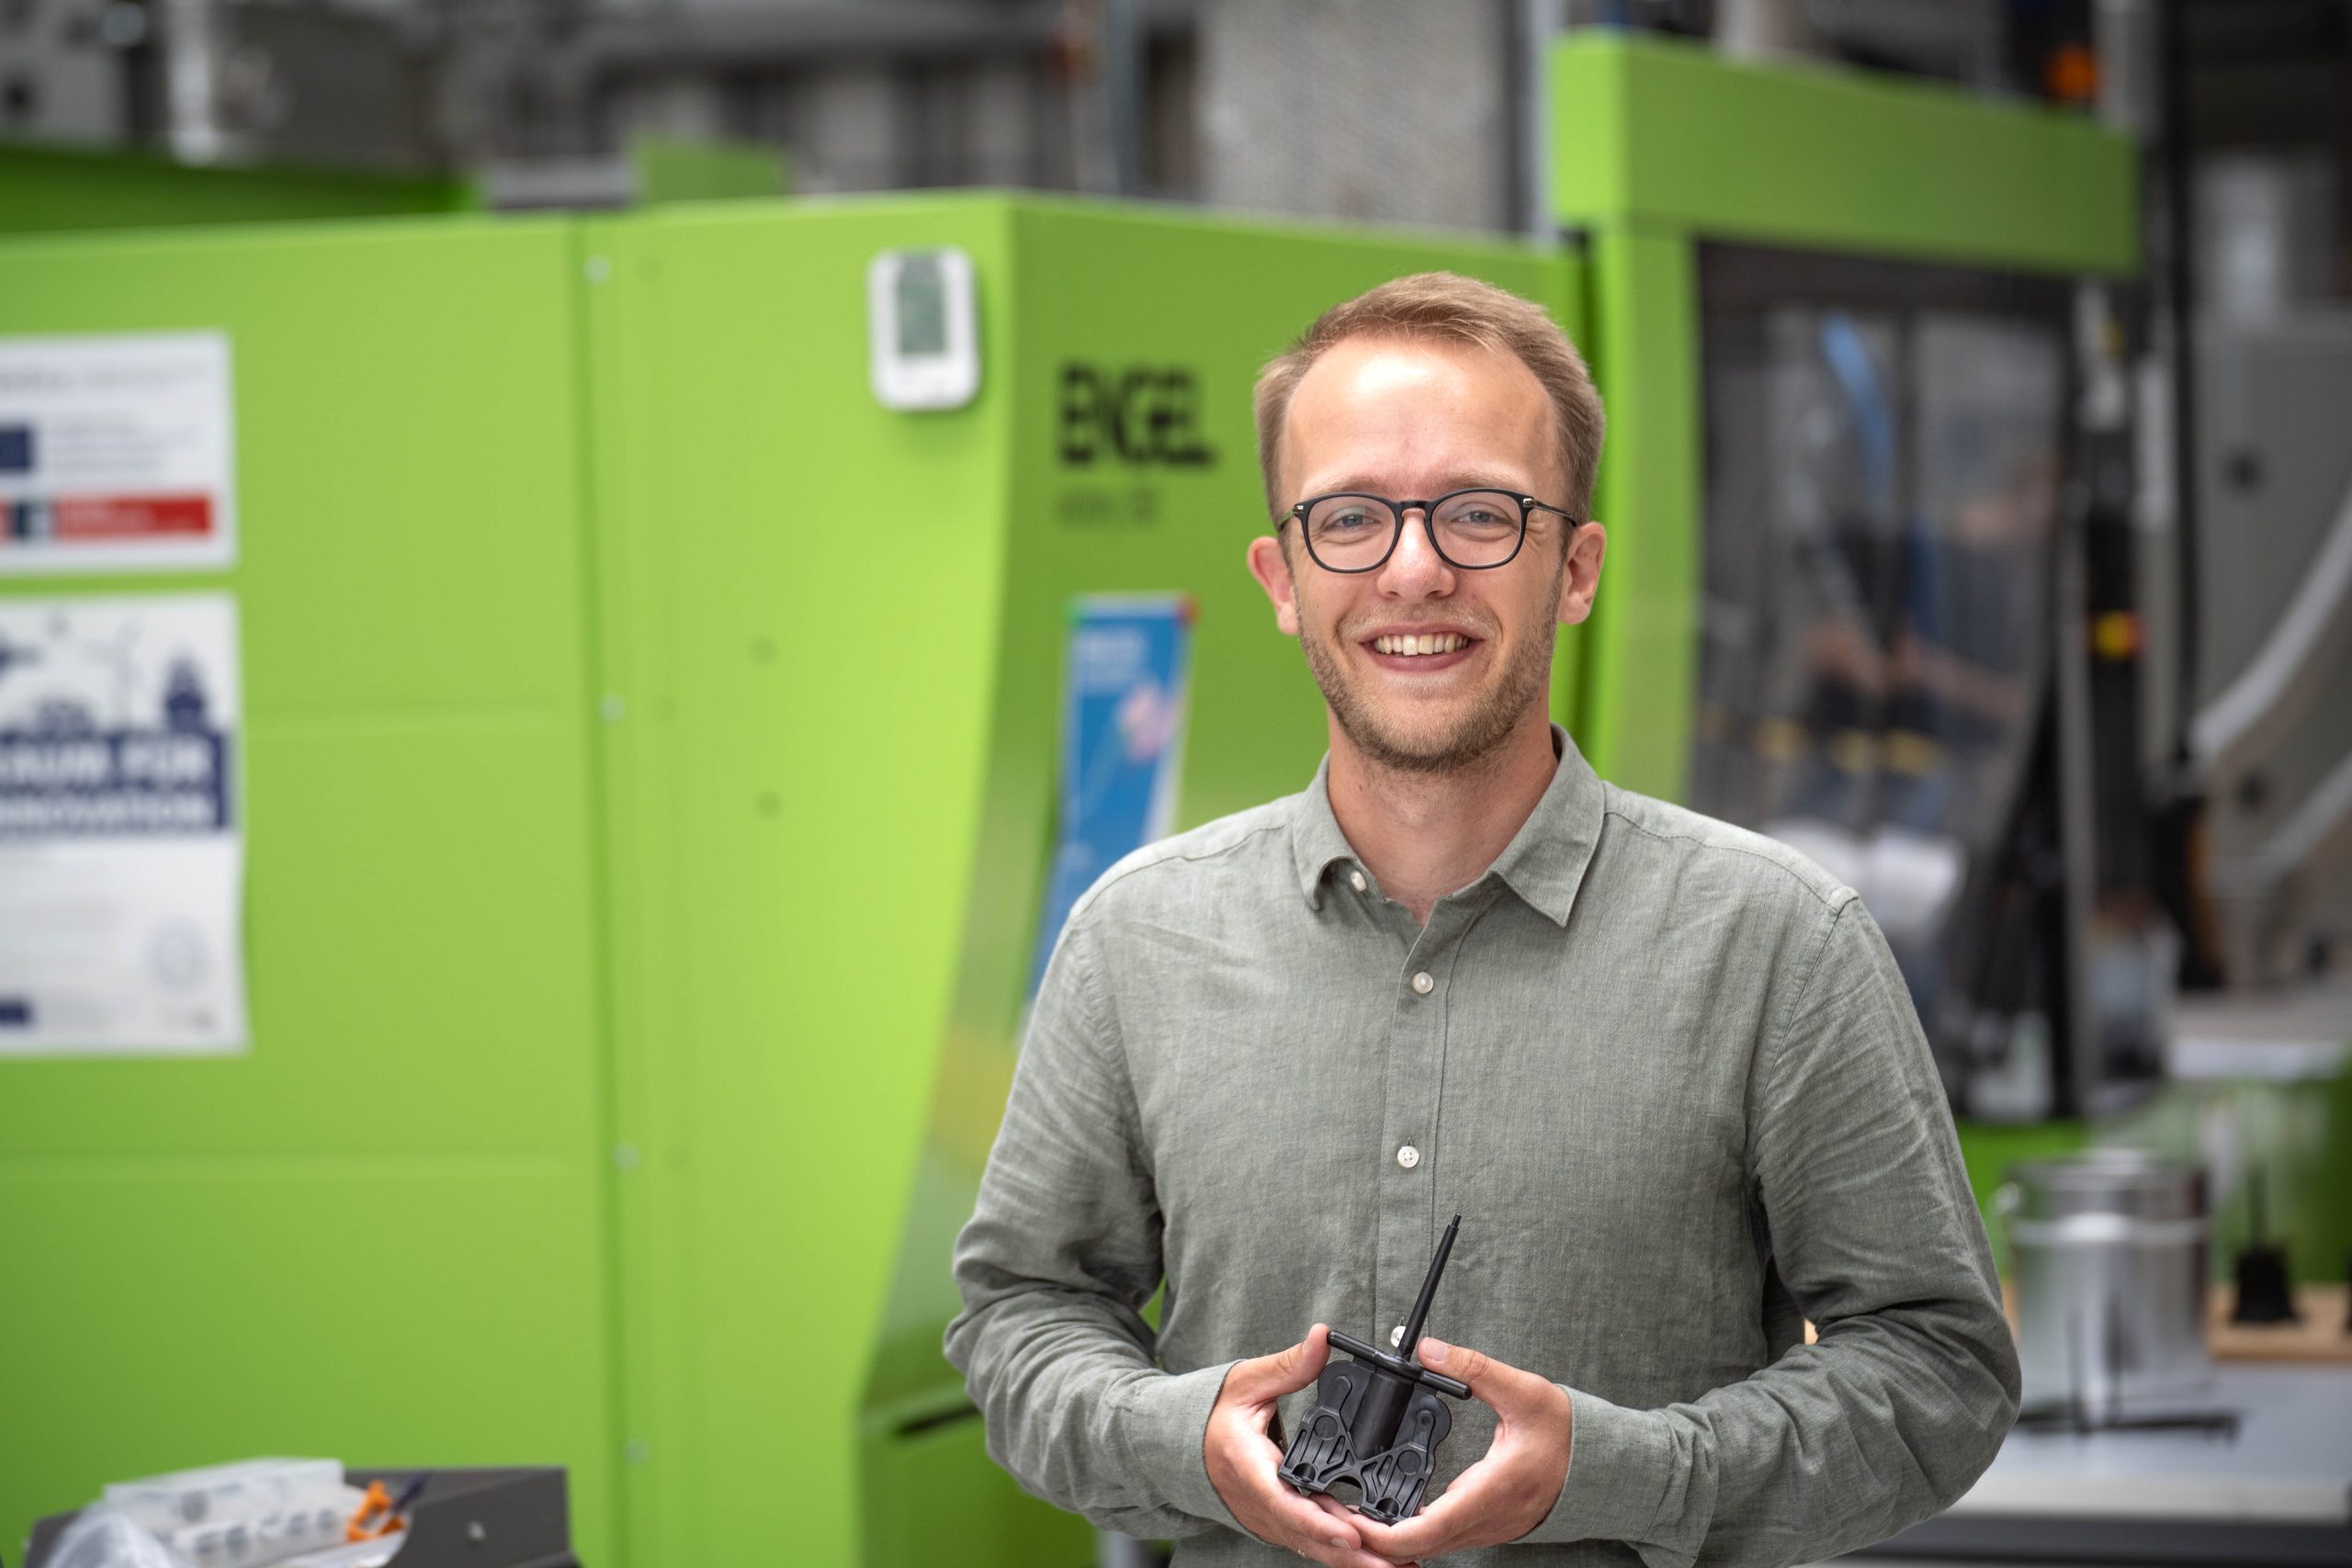 Ein Mann steht vor einer grünen Maschine und hält ein Produkt aus Kunststoff in der Hand